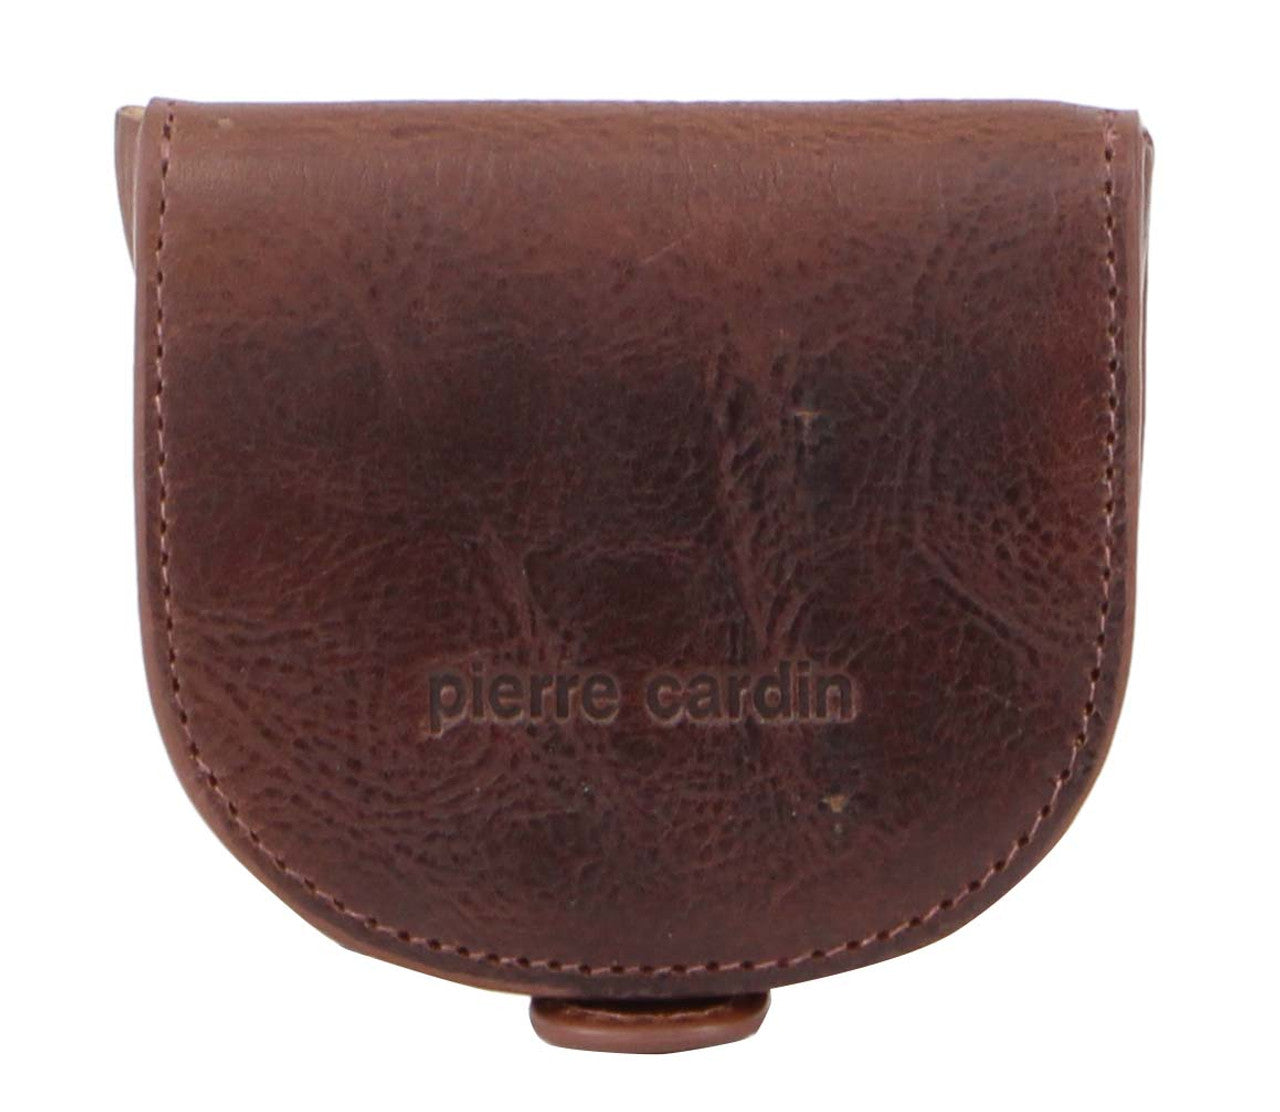 Pierre Cardin PC10315 Cognac Leather Coin-Purse-1